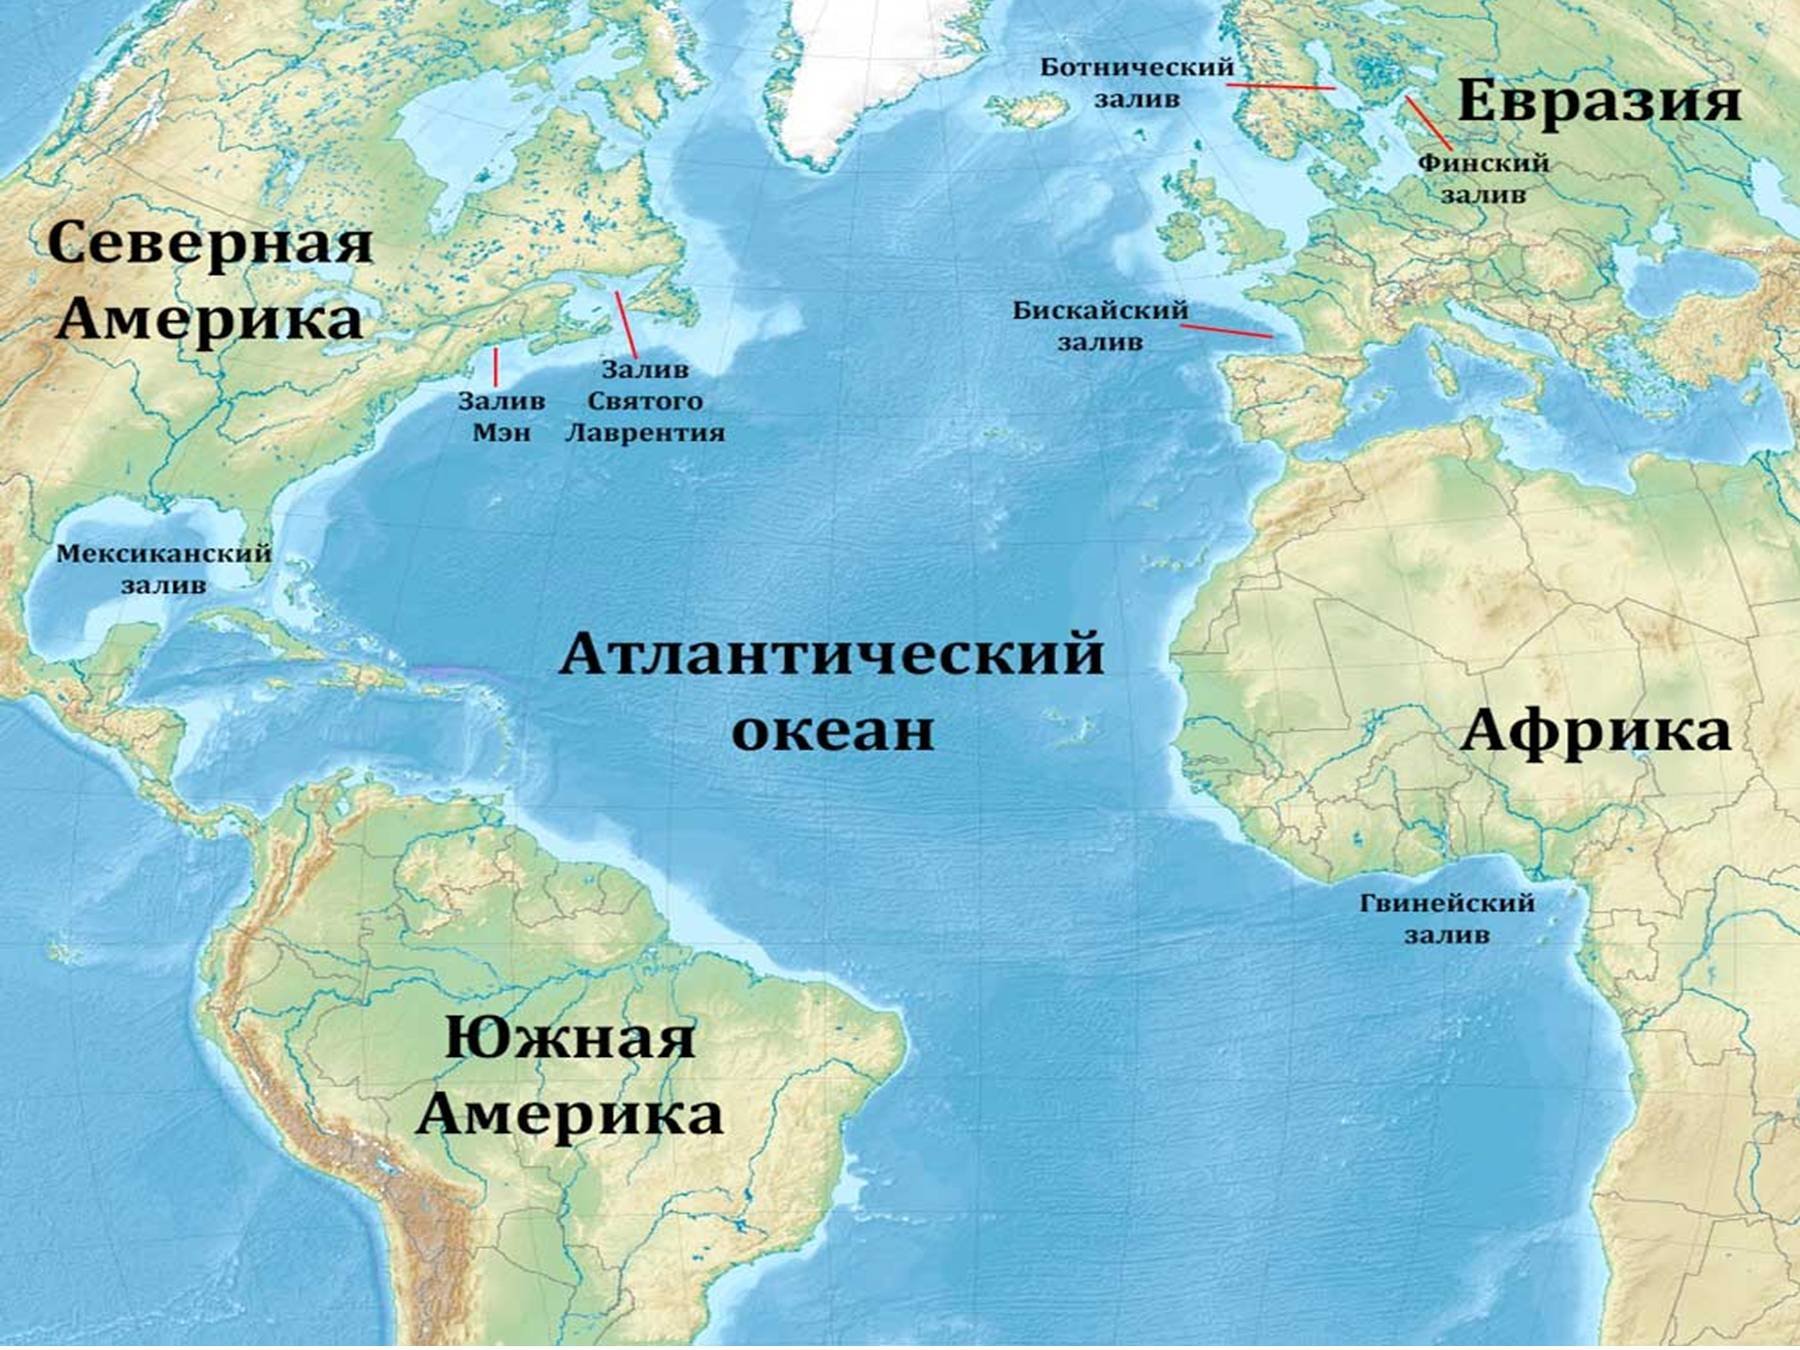 Расположение Атлантического океана на карте. Карта Атлантического океана с морями заливами и проливами. Атлантический океан на карте. Атлантический акеан на карте. Атлантический океан географическое положение полушарие